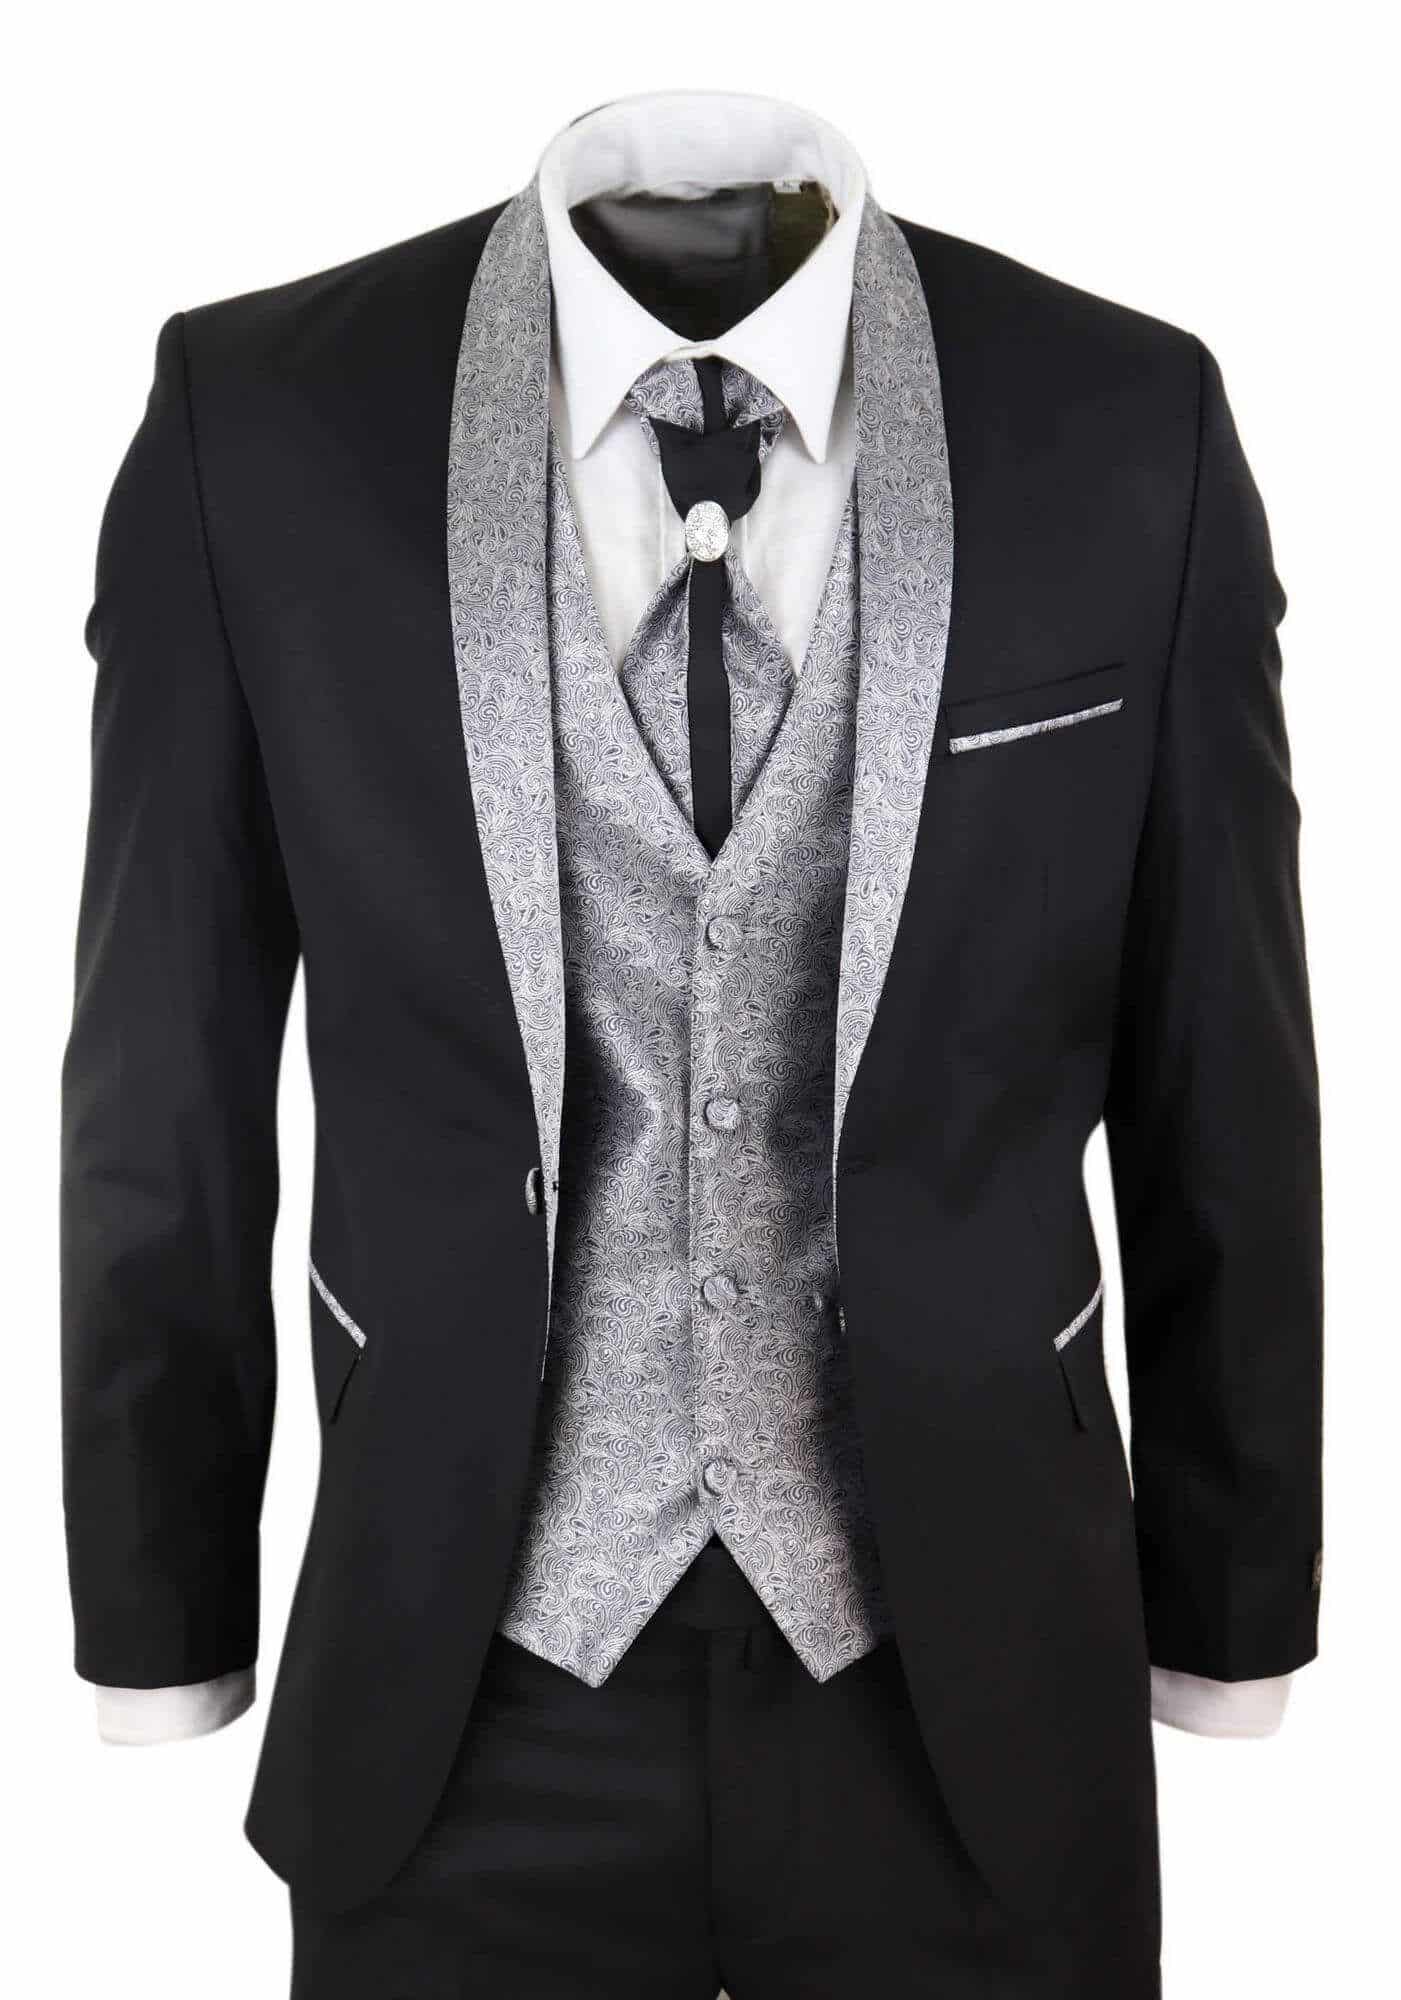 12 Trending black suit ideas for men to look sharp